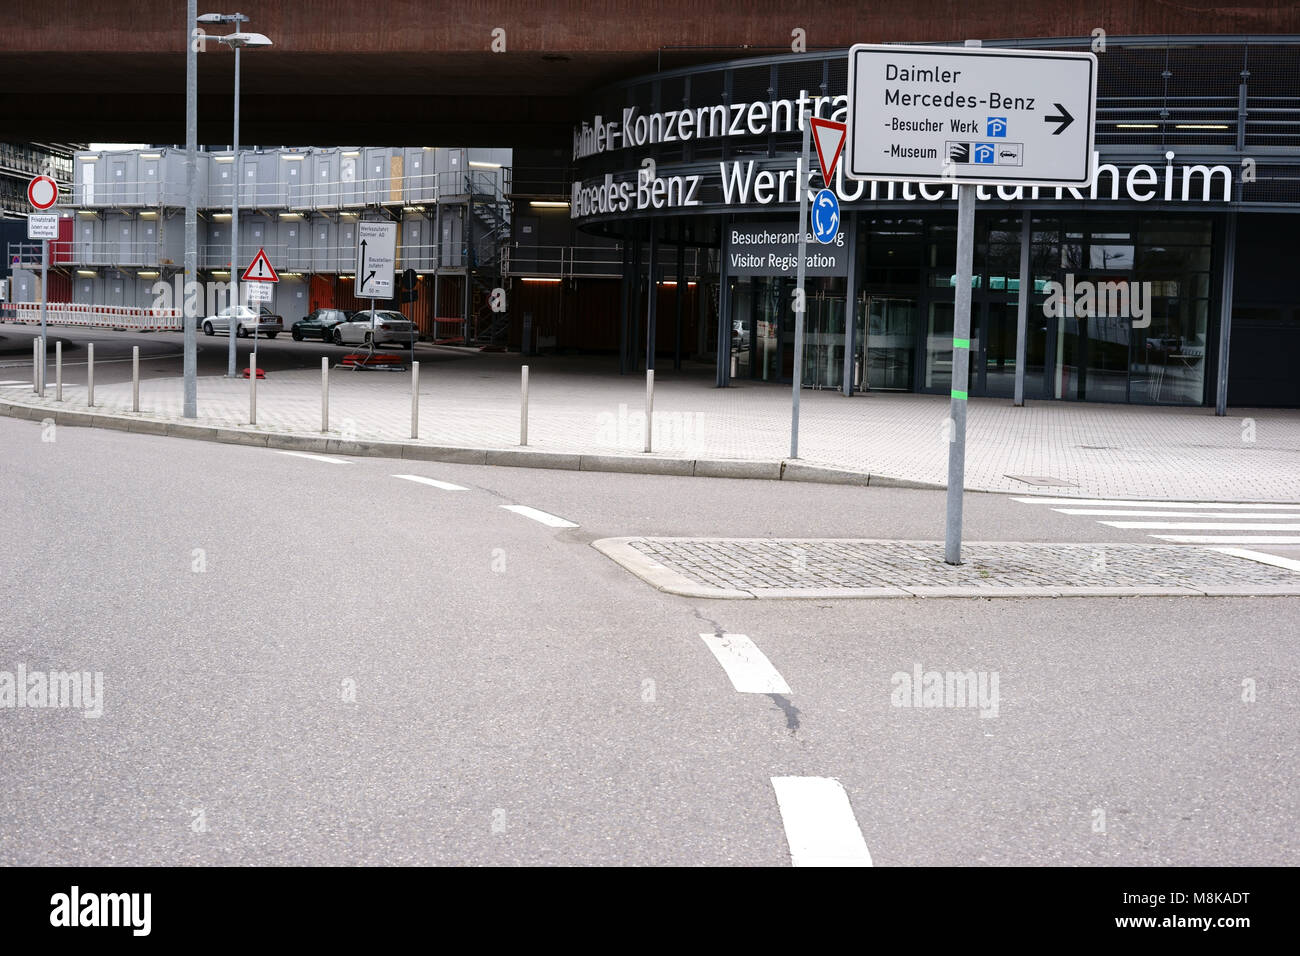 Stoccarda, Germania - Febbraio 03, 2018: strade e infrastrutture nella parte anteriore del visitatore ingresso della Daimler sede dell'Mercedes-Be Foto Stock